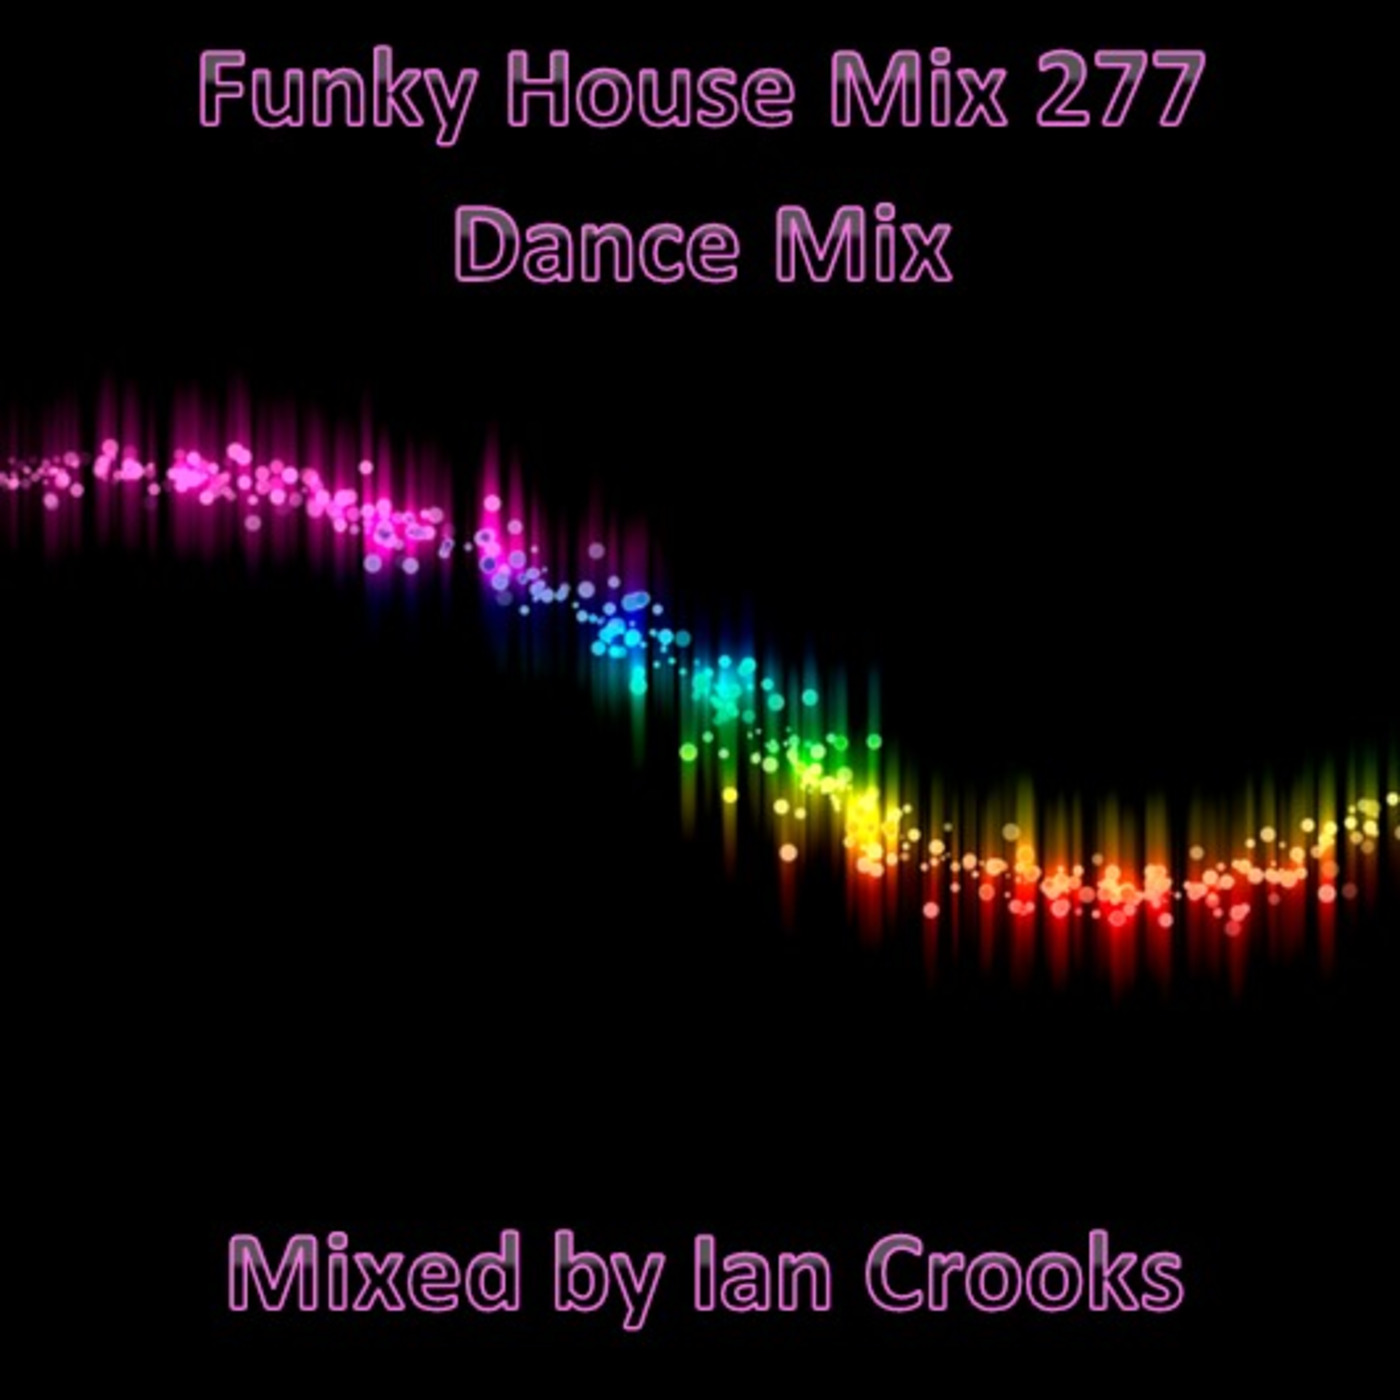 Ian Crooks Mix 277 (Dance Mix)